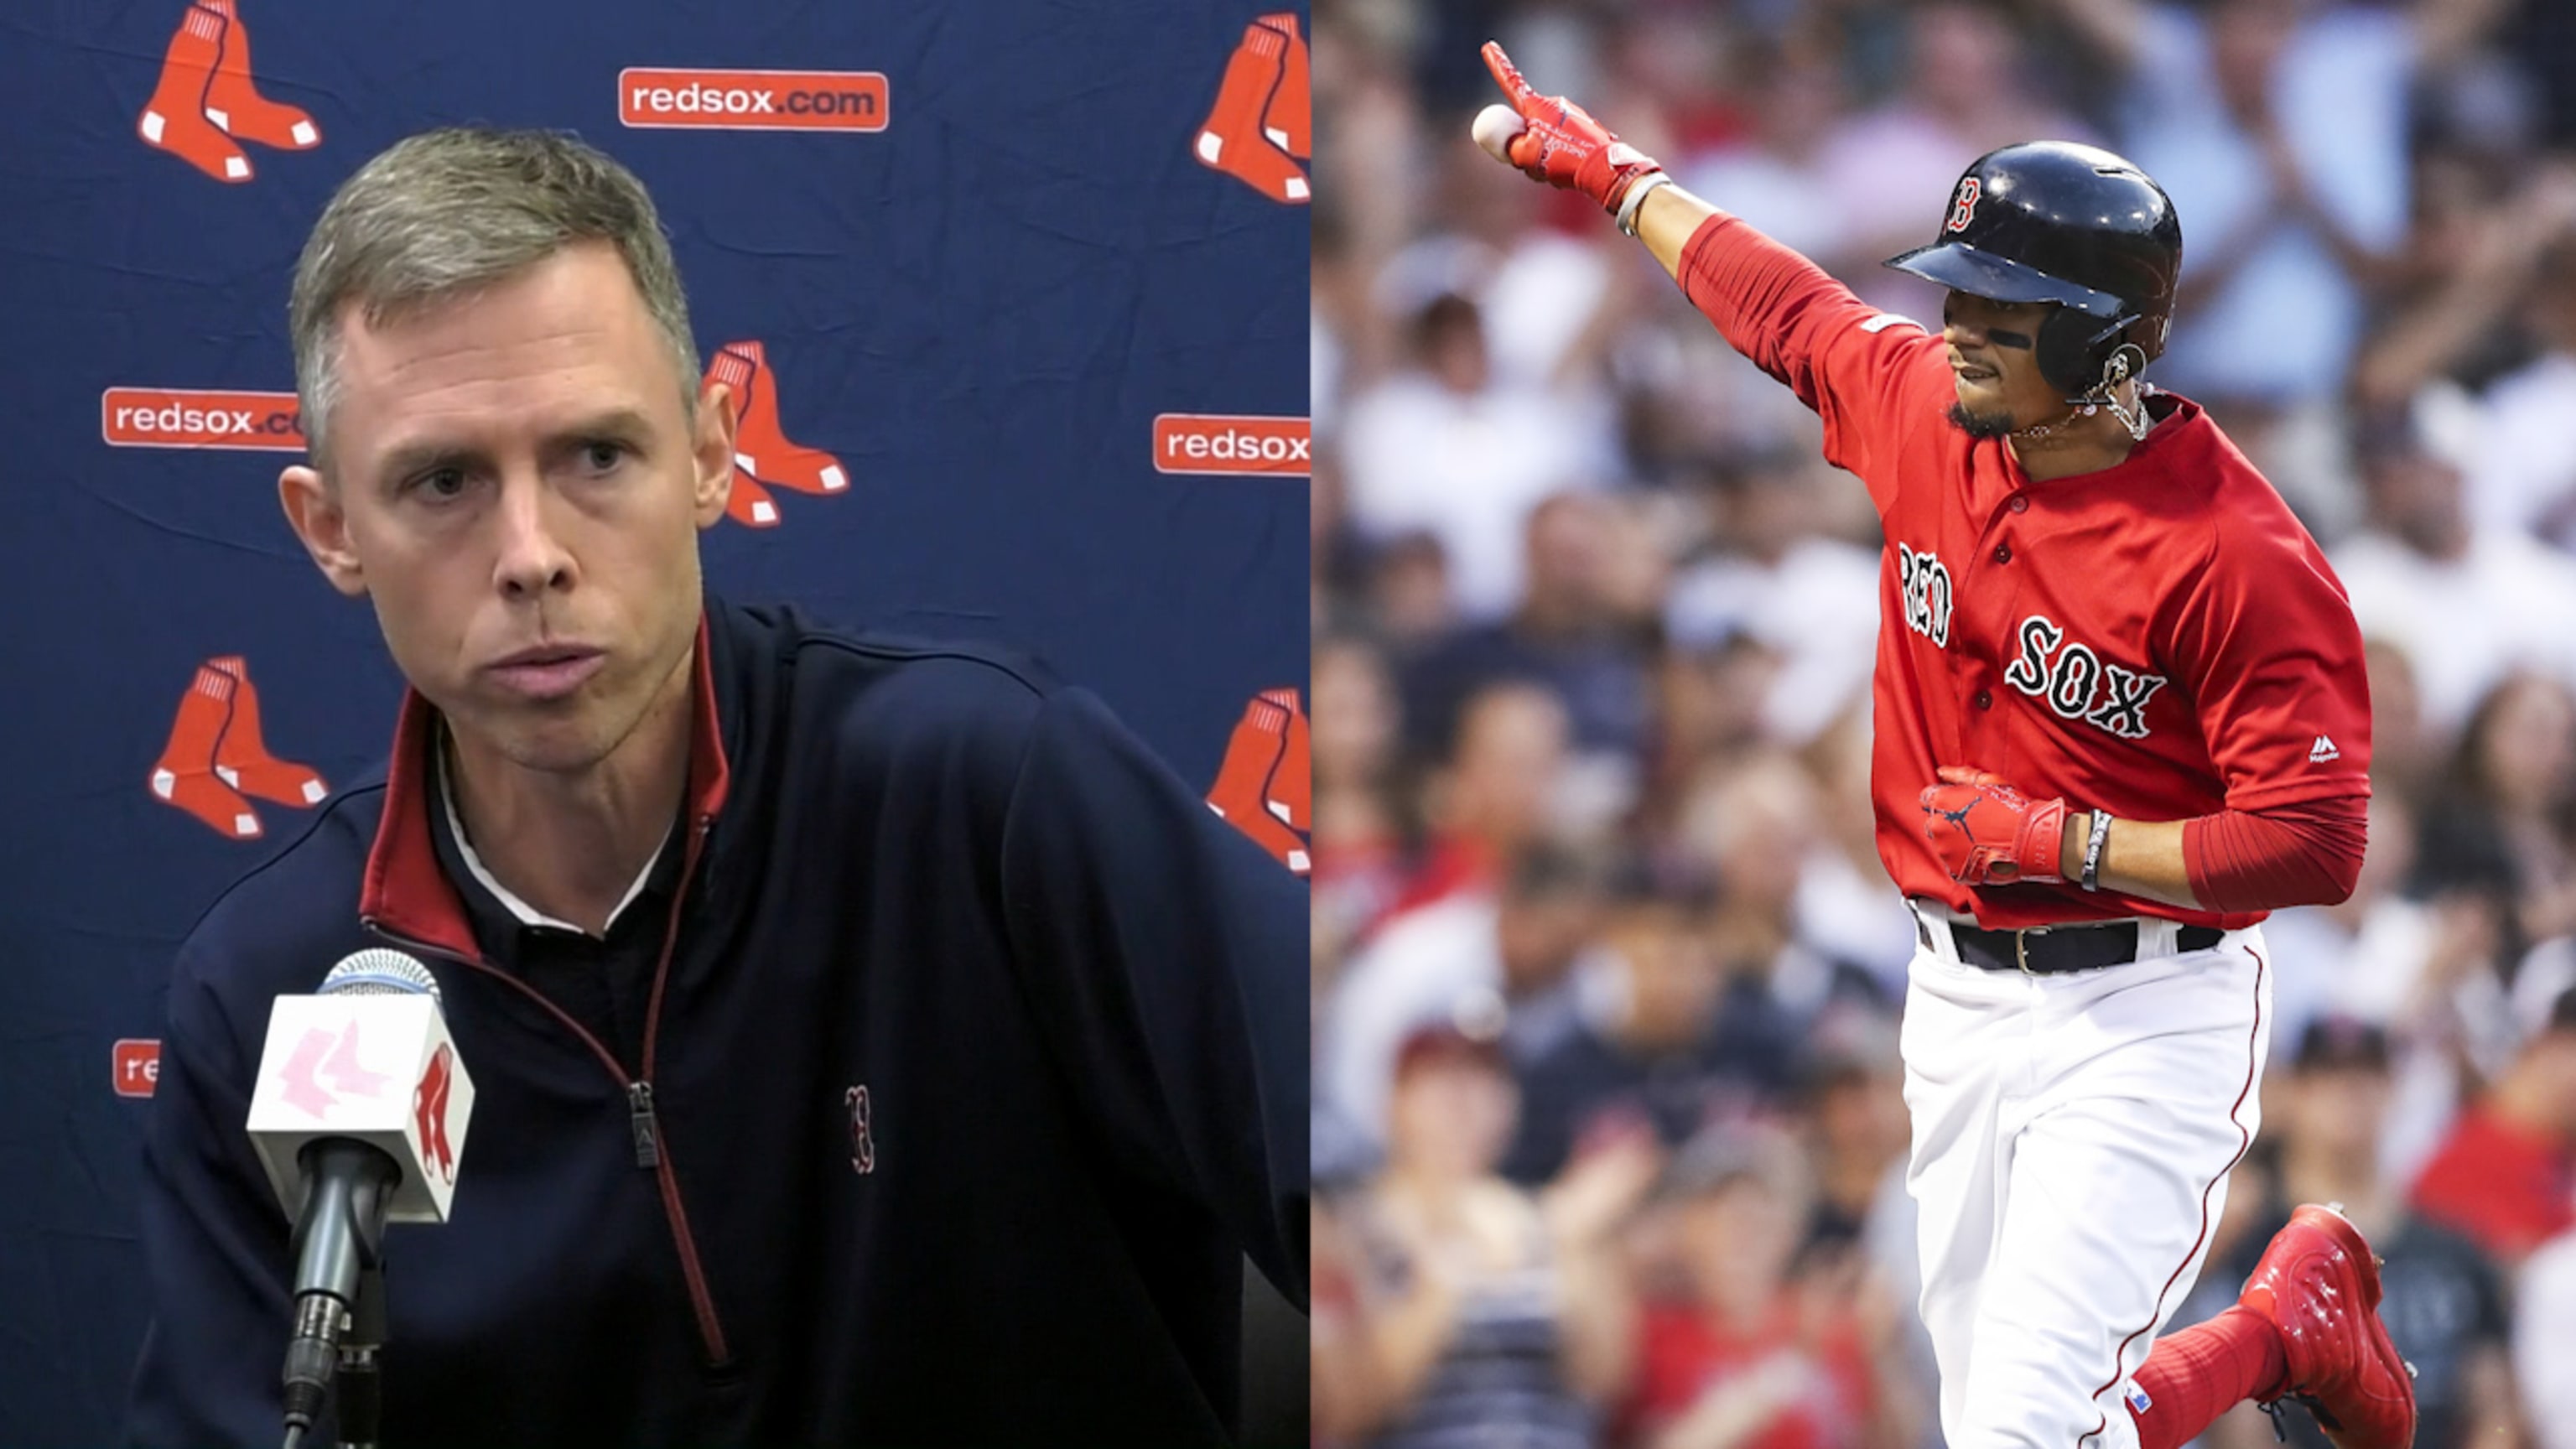 Mookie Betts has best-selling MLB jersey in 2020; zero Boston Red